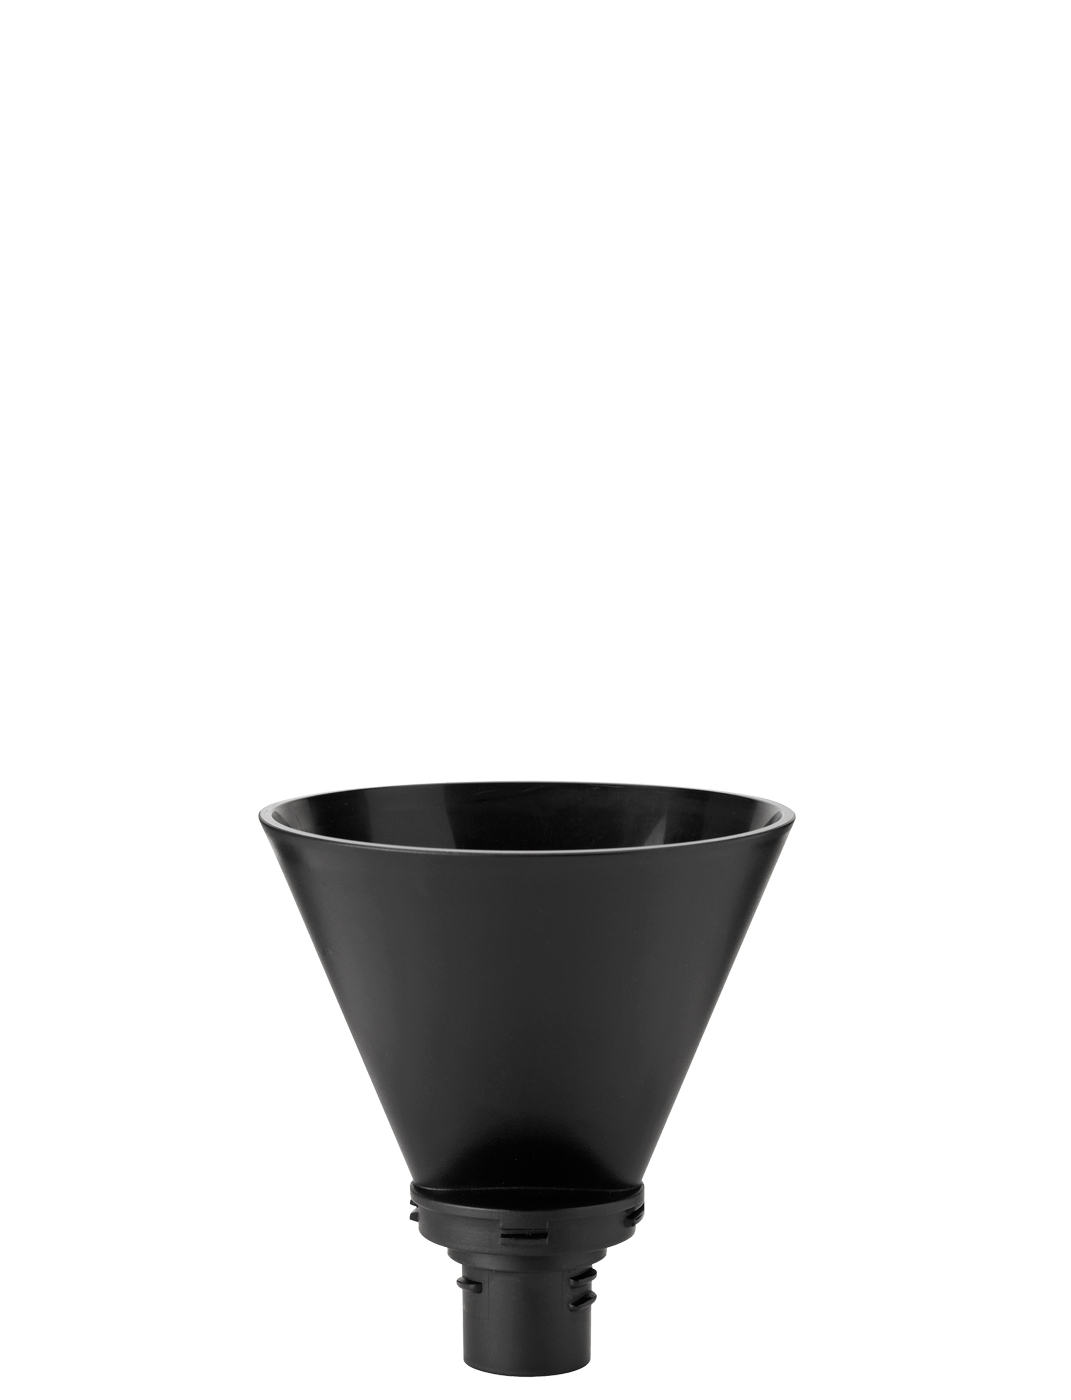 Stelton Filterhalter für Isolierkanne black - Maße: 13,5 x 13,5 x 14,2 cm